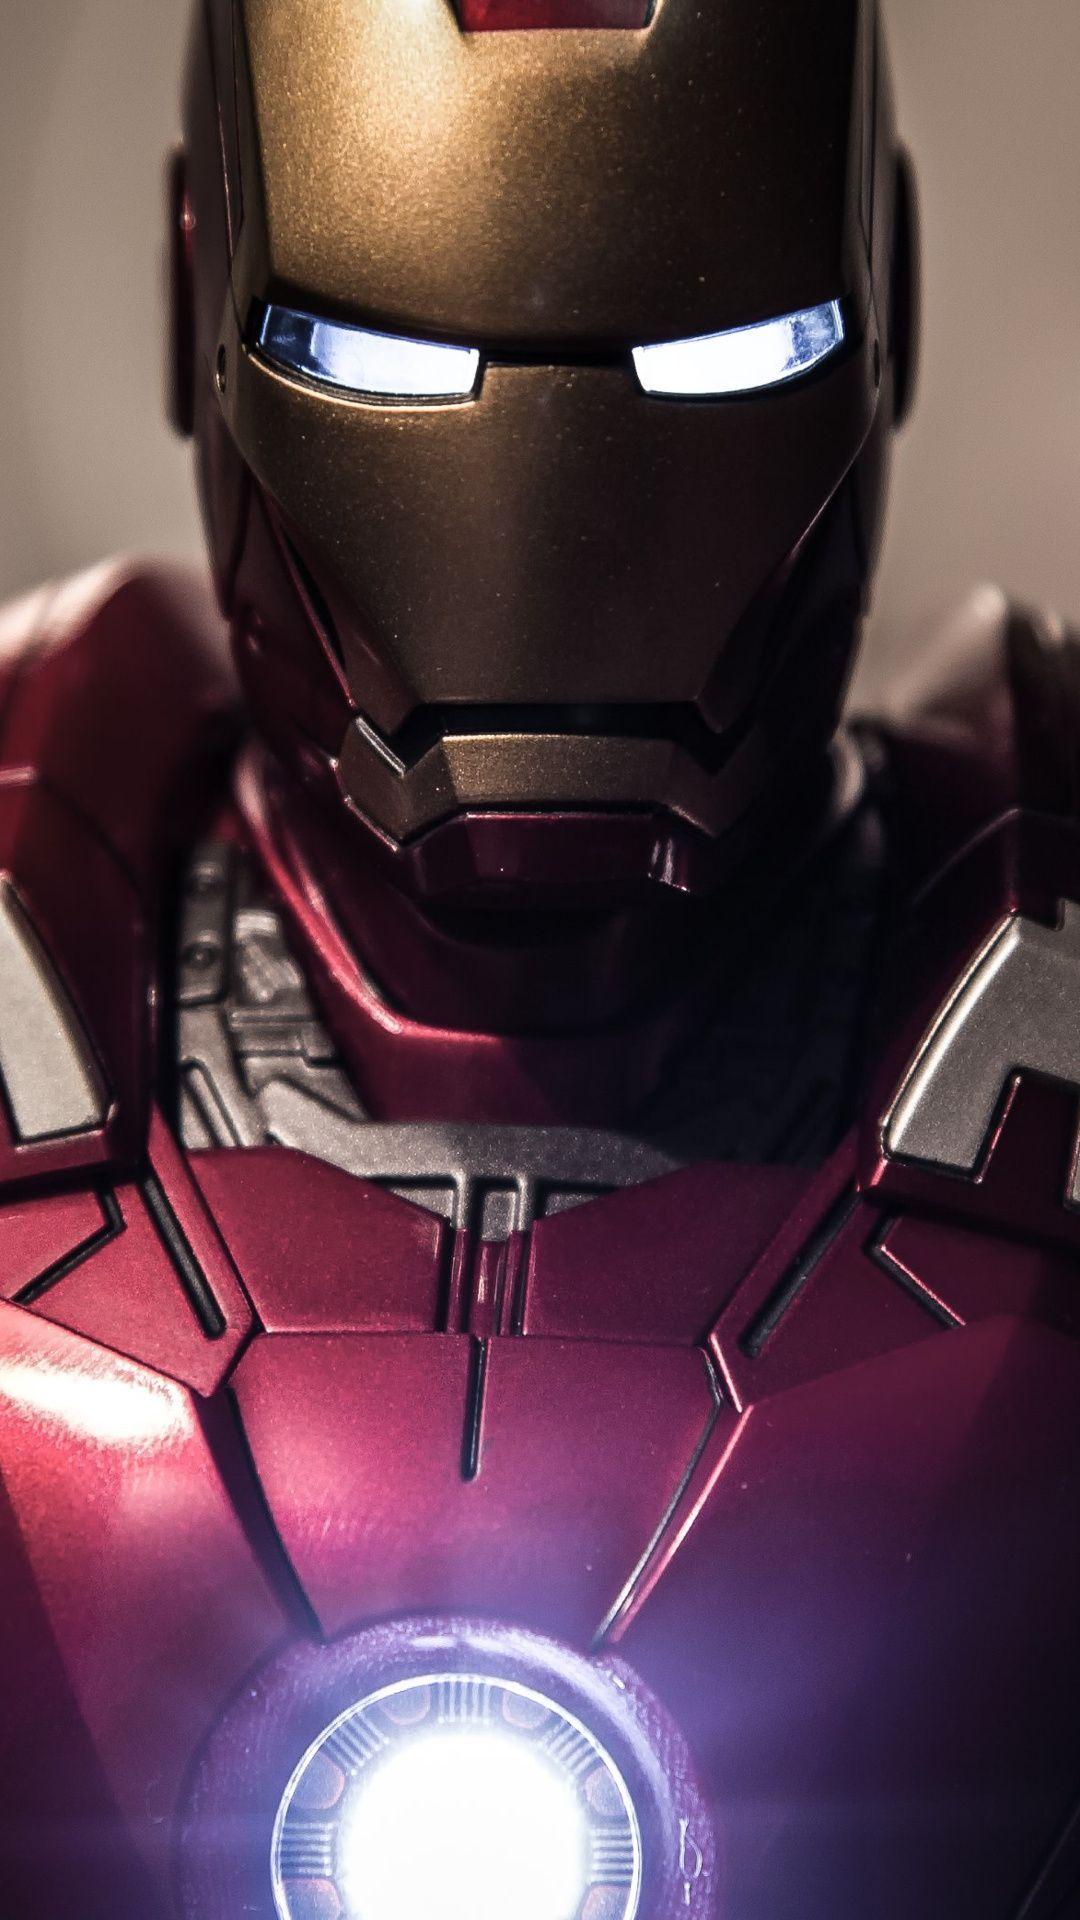 Hình nền điện thoại Iron Man 3D sẽ đưa bạn đến một thế giới kỳ công và đầy màu sắc. Với hình ảnh Iron Man 3D sống động và mang tính chất công nghệ, bạn sẽ cảm thấy như đang đối diện với nhân vật yêu thích của mình trên màn hình điện thoại. Không chỉ thể hiện tính cách mạnh mẽ của Iron Man mà còn rất thú vị.